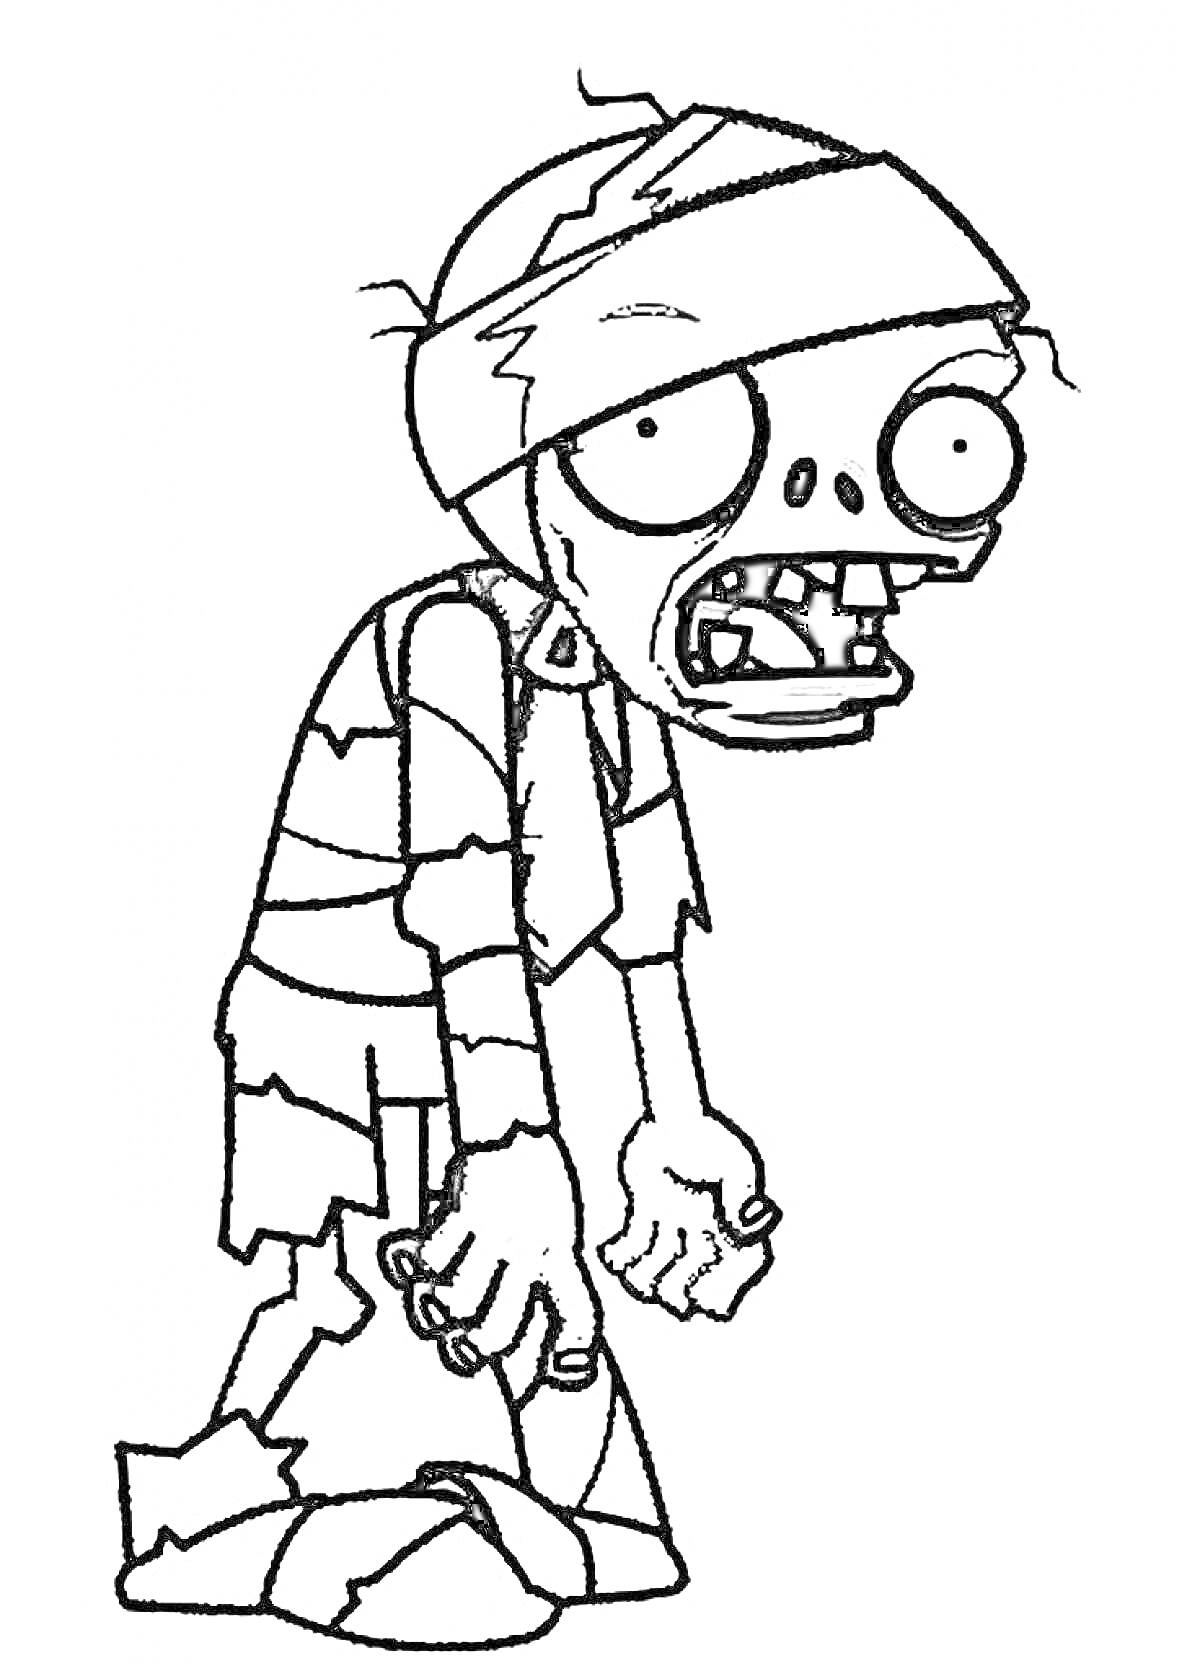 Раскраска Зомби с повязками на голове и теле, с большими глазами и открытым ртом